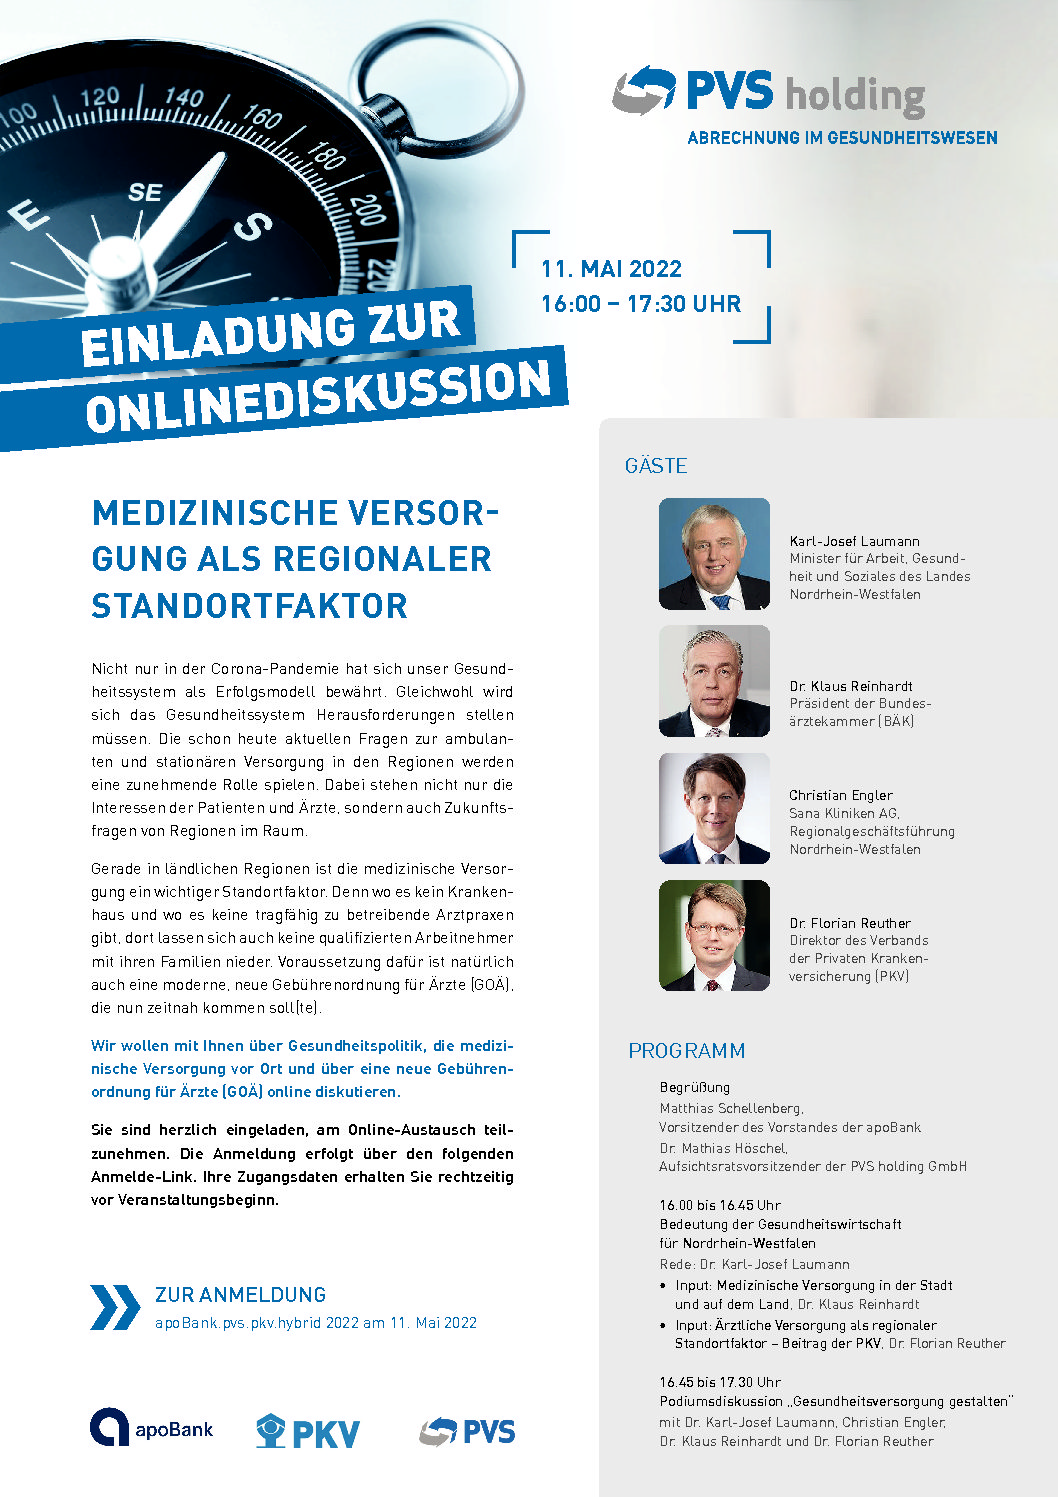 You are currently viewing Hybrid-Veranstaltung „Medizinische Versorgung als regionaler Standortfaktor“ mit Minister Laumann